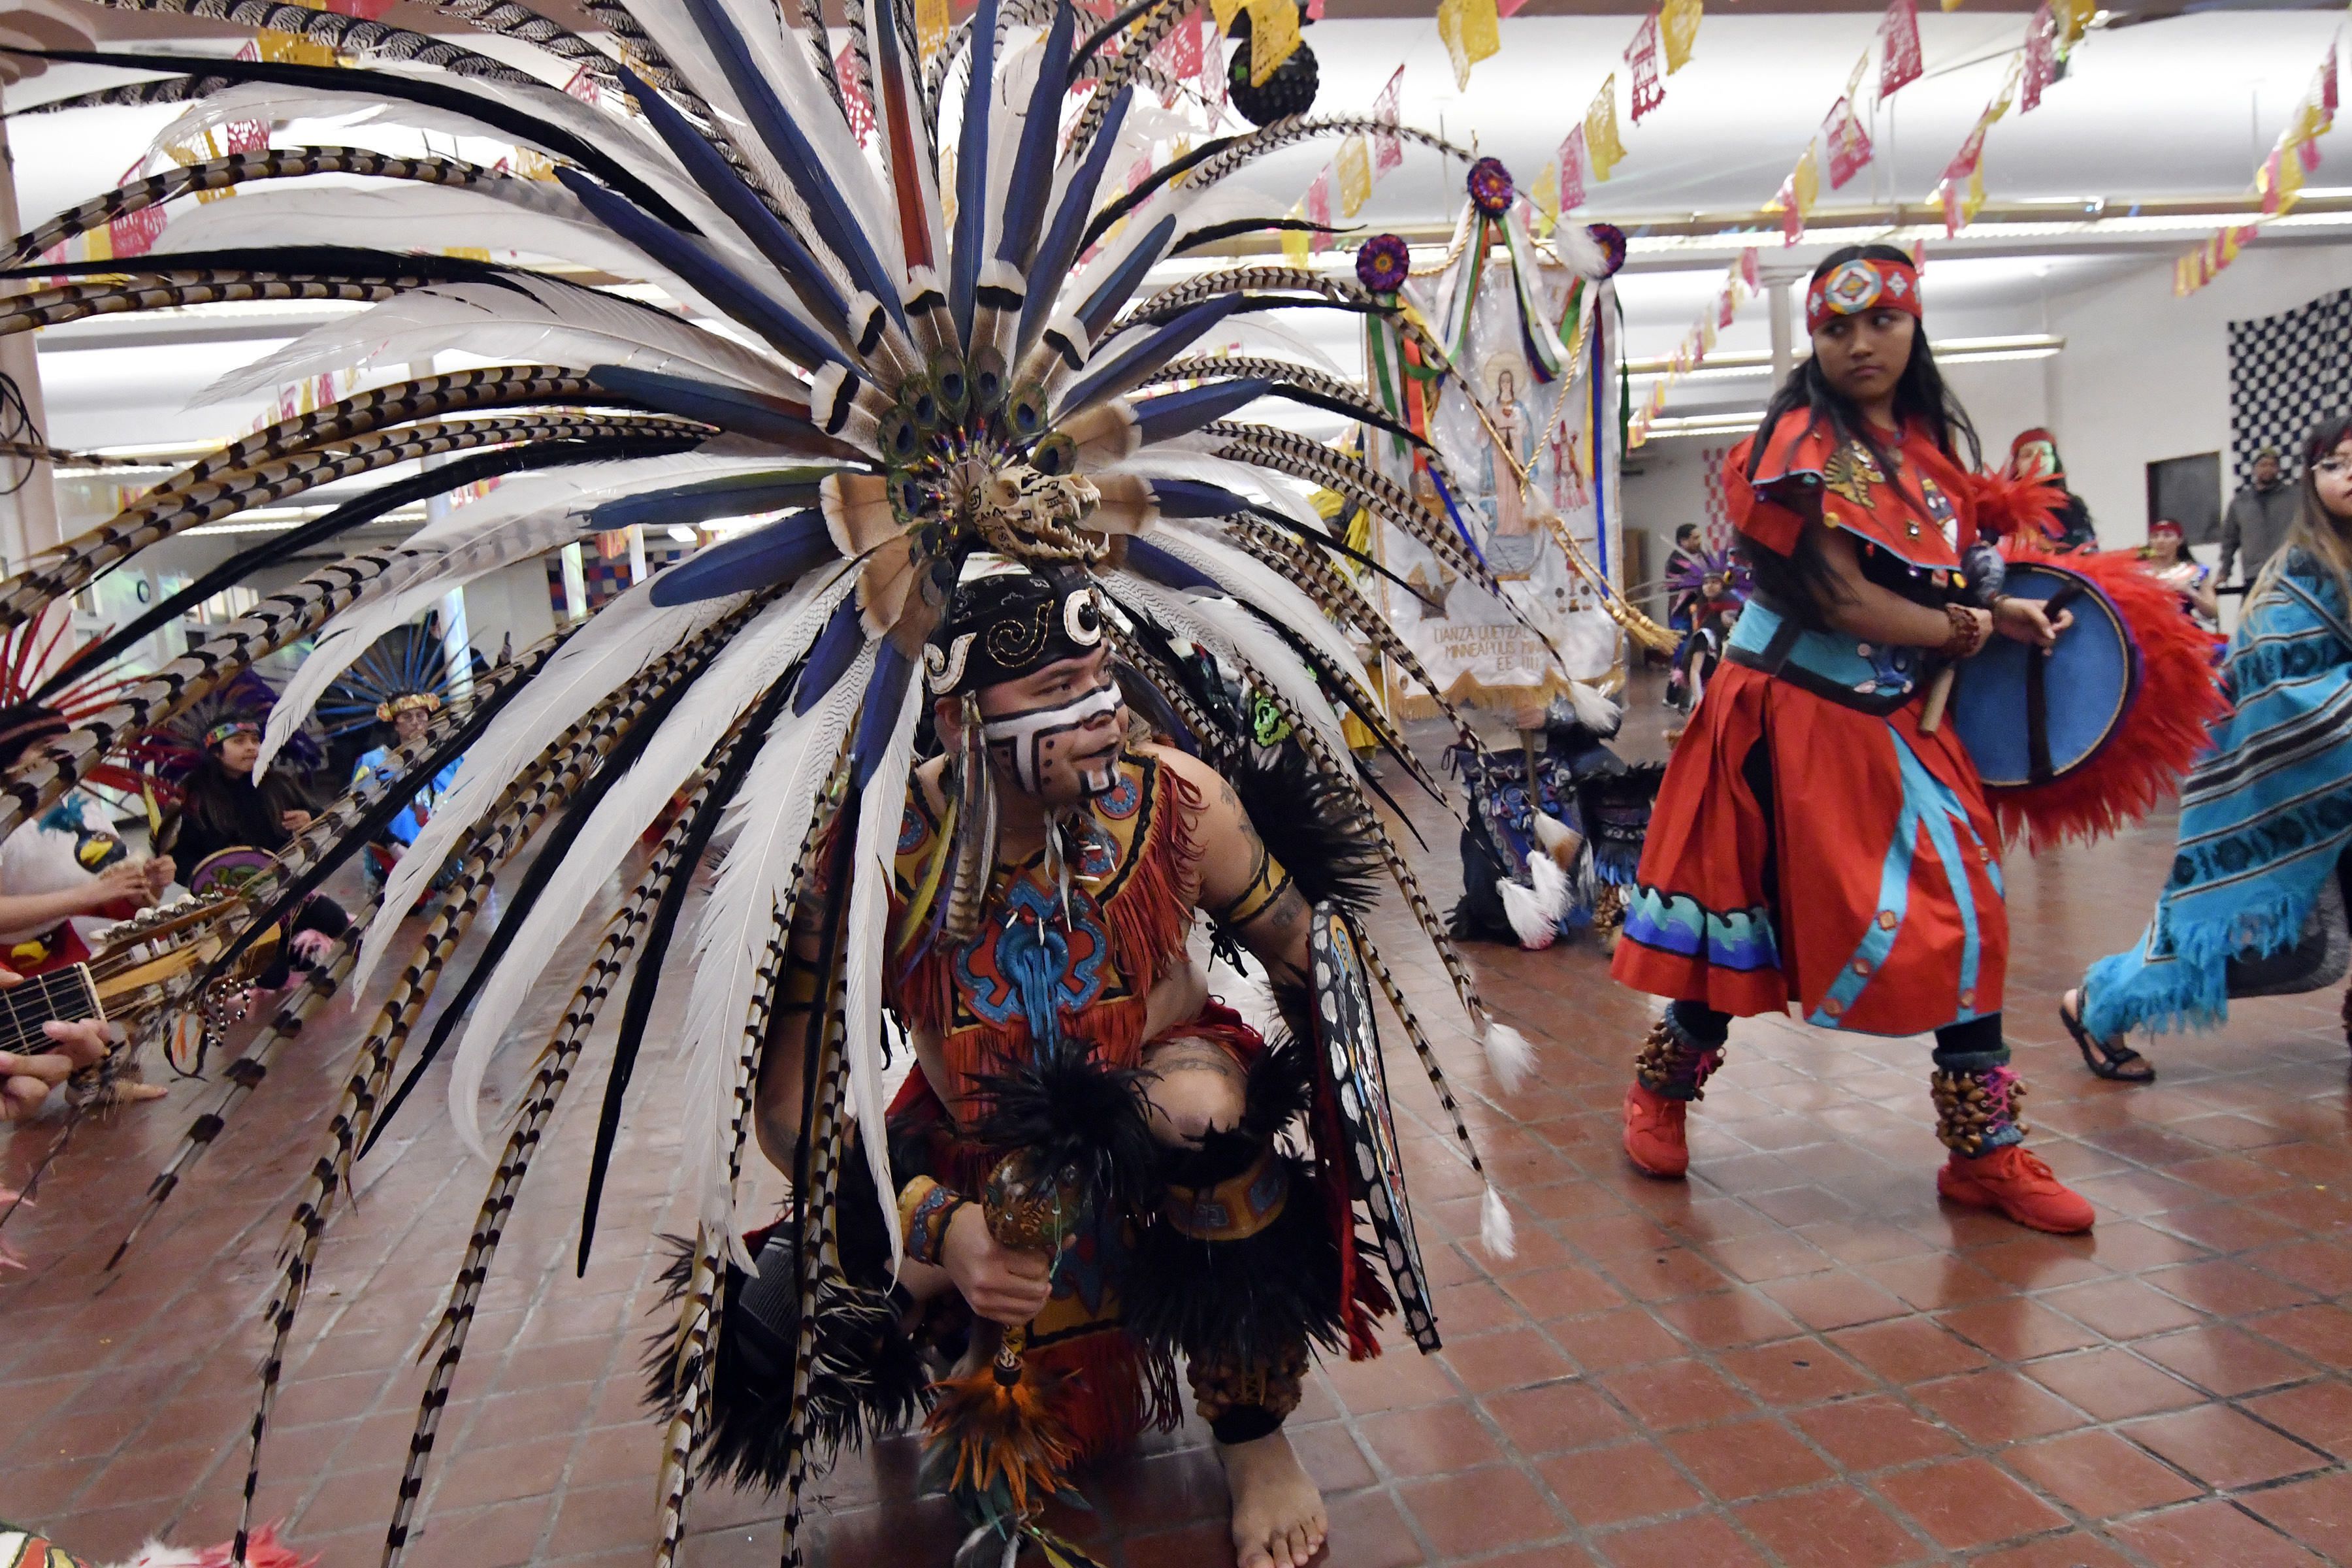 Personas con indumentarias aztecas bailan danzas típicas del sur de México durante los festejos en homenaje a San Pablo en Minneapolis el 24 de enero del 2020. San Pablo es el santo patrón de Axochipán, el pueblo de donde provienen muchos mexicanos de Minneapolis. (AP Photo/Jim Mone)